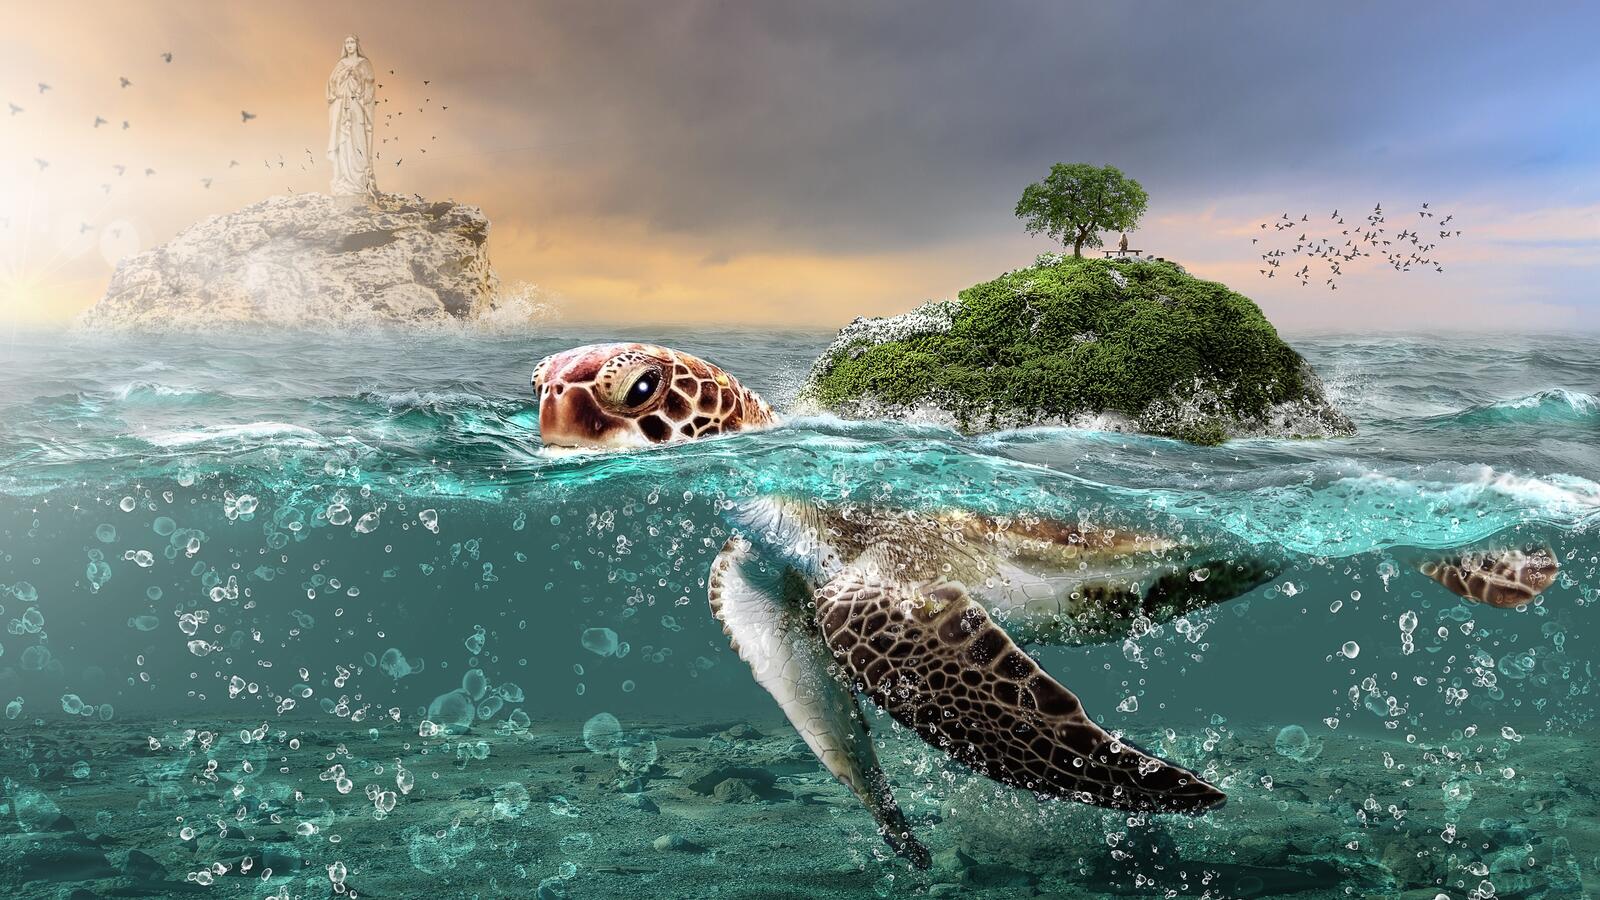 Wallpapers fantasy creatures underwater island on the desktop